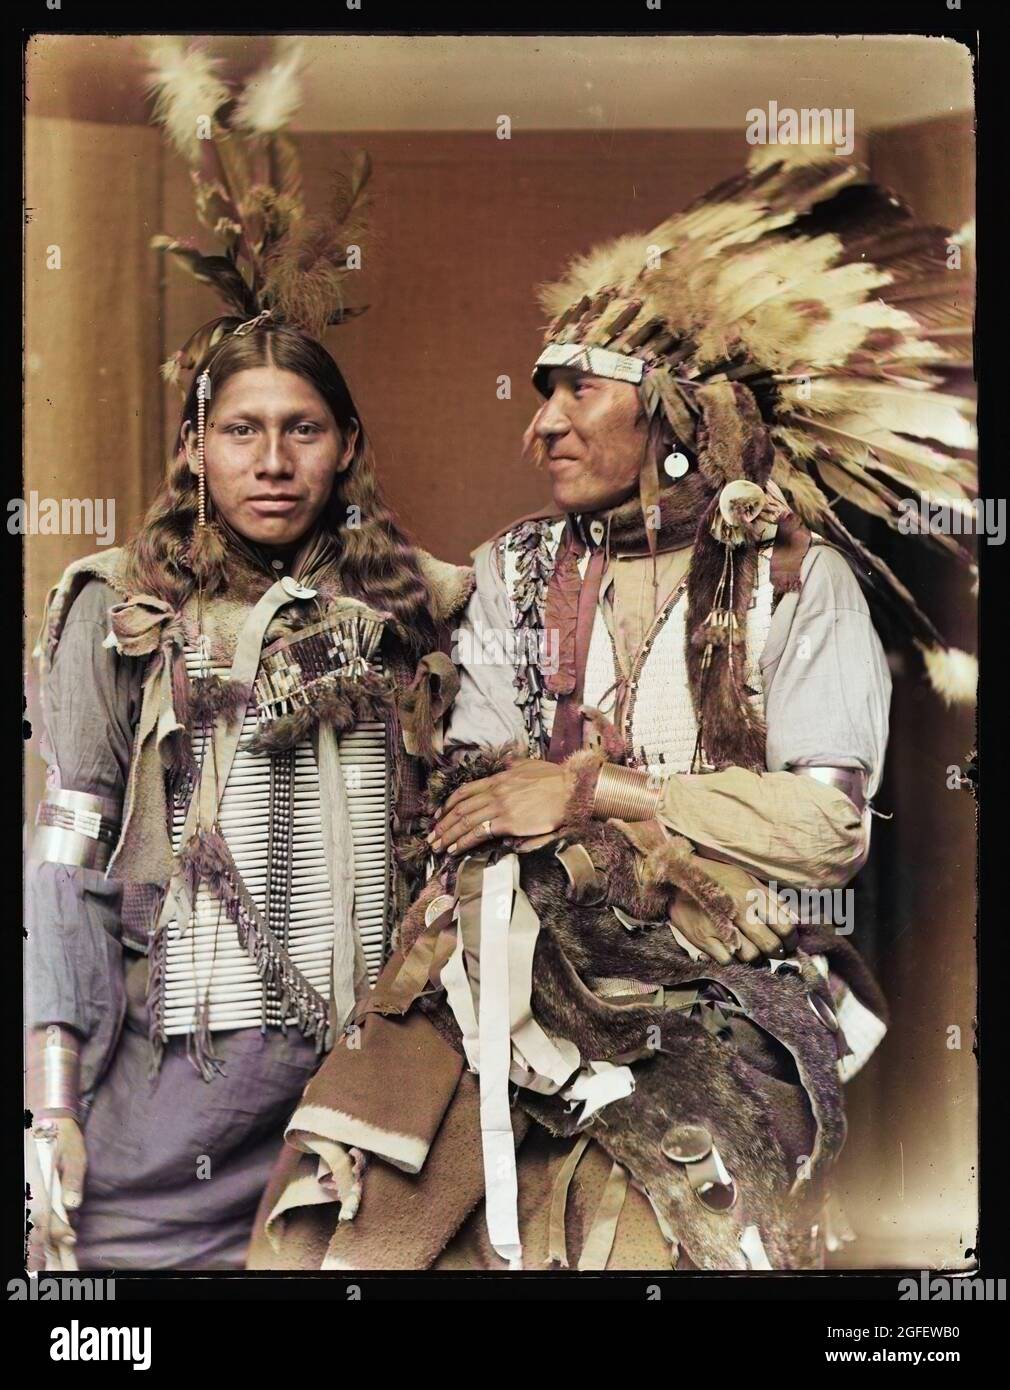 Santo fra- sinistra e Big Turnips, nativi americani / indiani americani. Probabilmente membri del Buffalo Bill's Wild West Show. C 1900. Foto colorata. Foto Stock